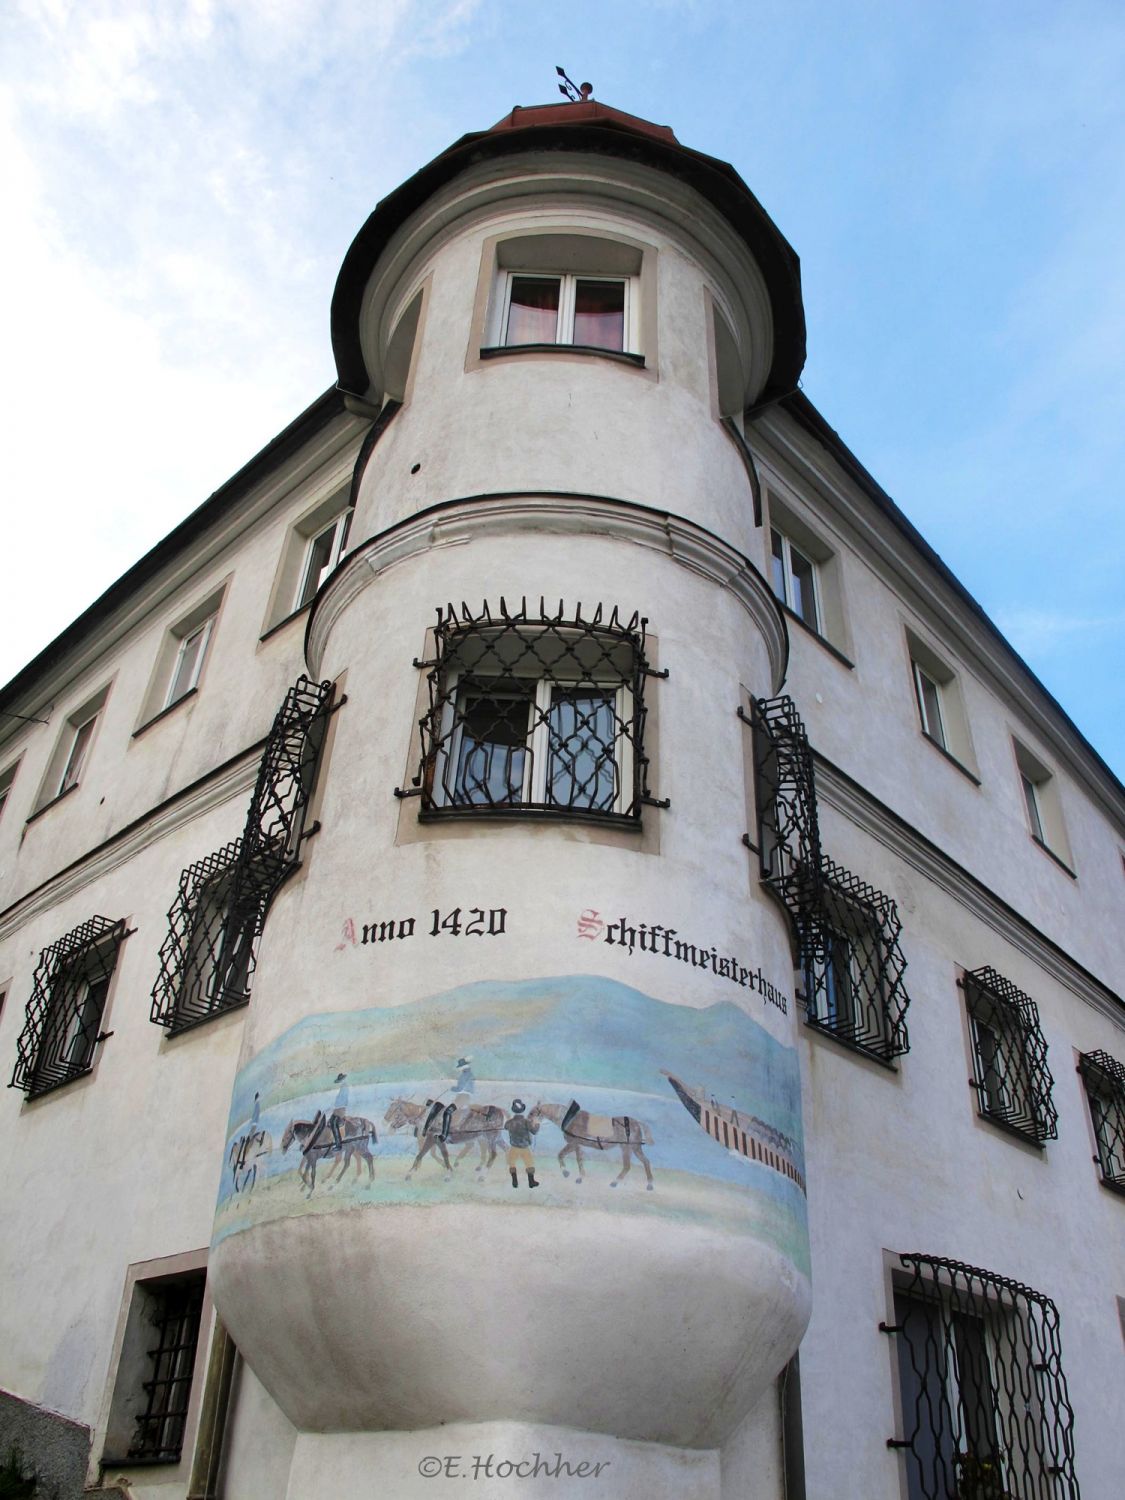 Schiffmeisterhaus von 1420 in St. Nikola